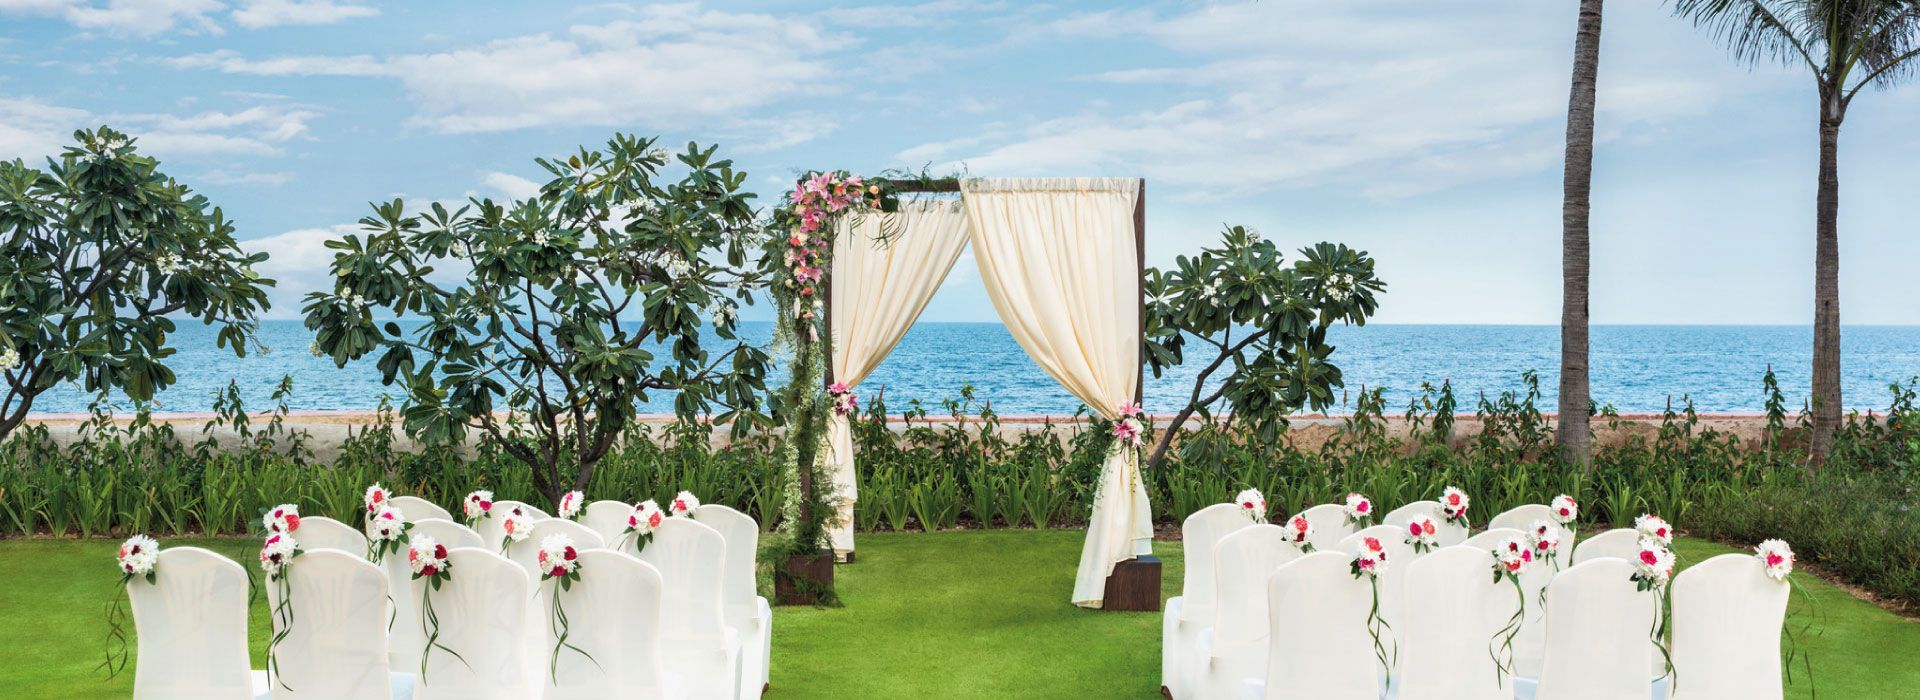 1920x700she3989mf 181874 Luna La Pran Lawn Wedding by the sea